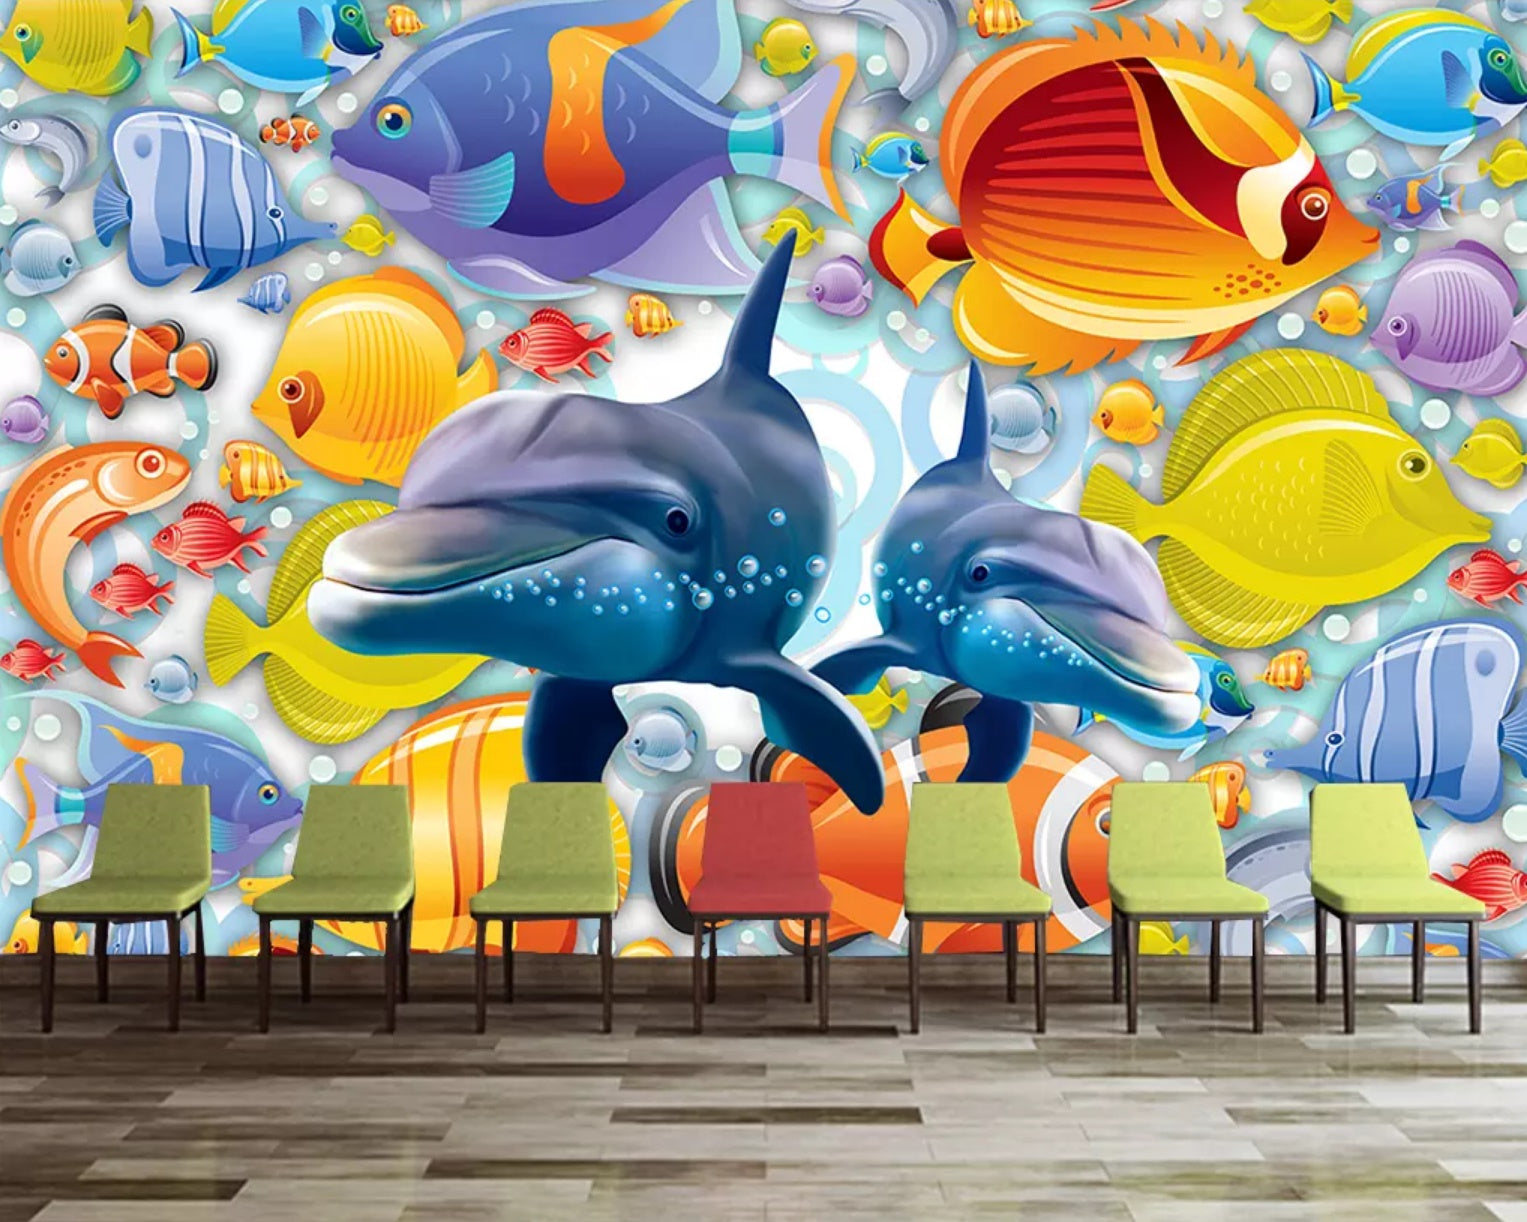 3D Fish School 1494 Wall Murals Wallpaper AJ Wallpaper 2 